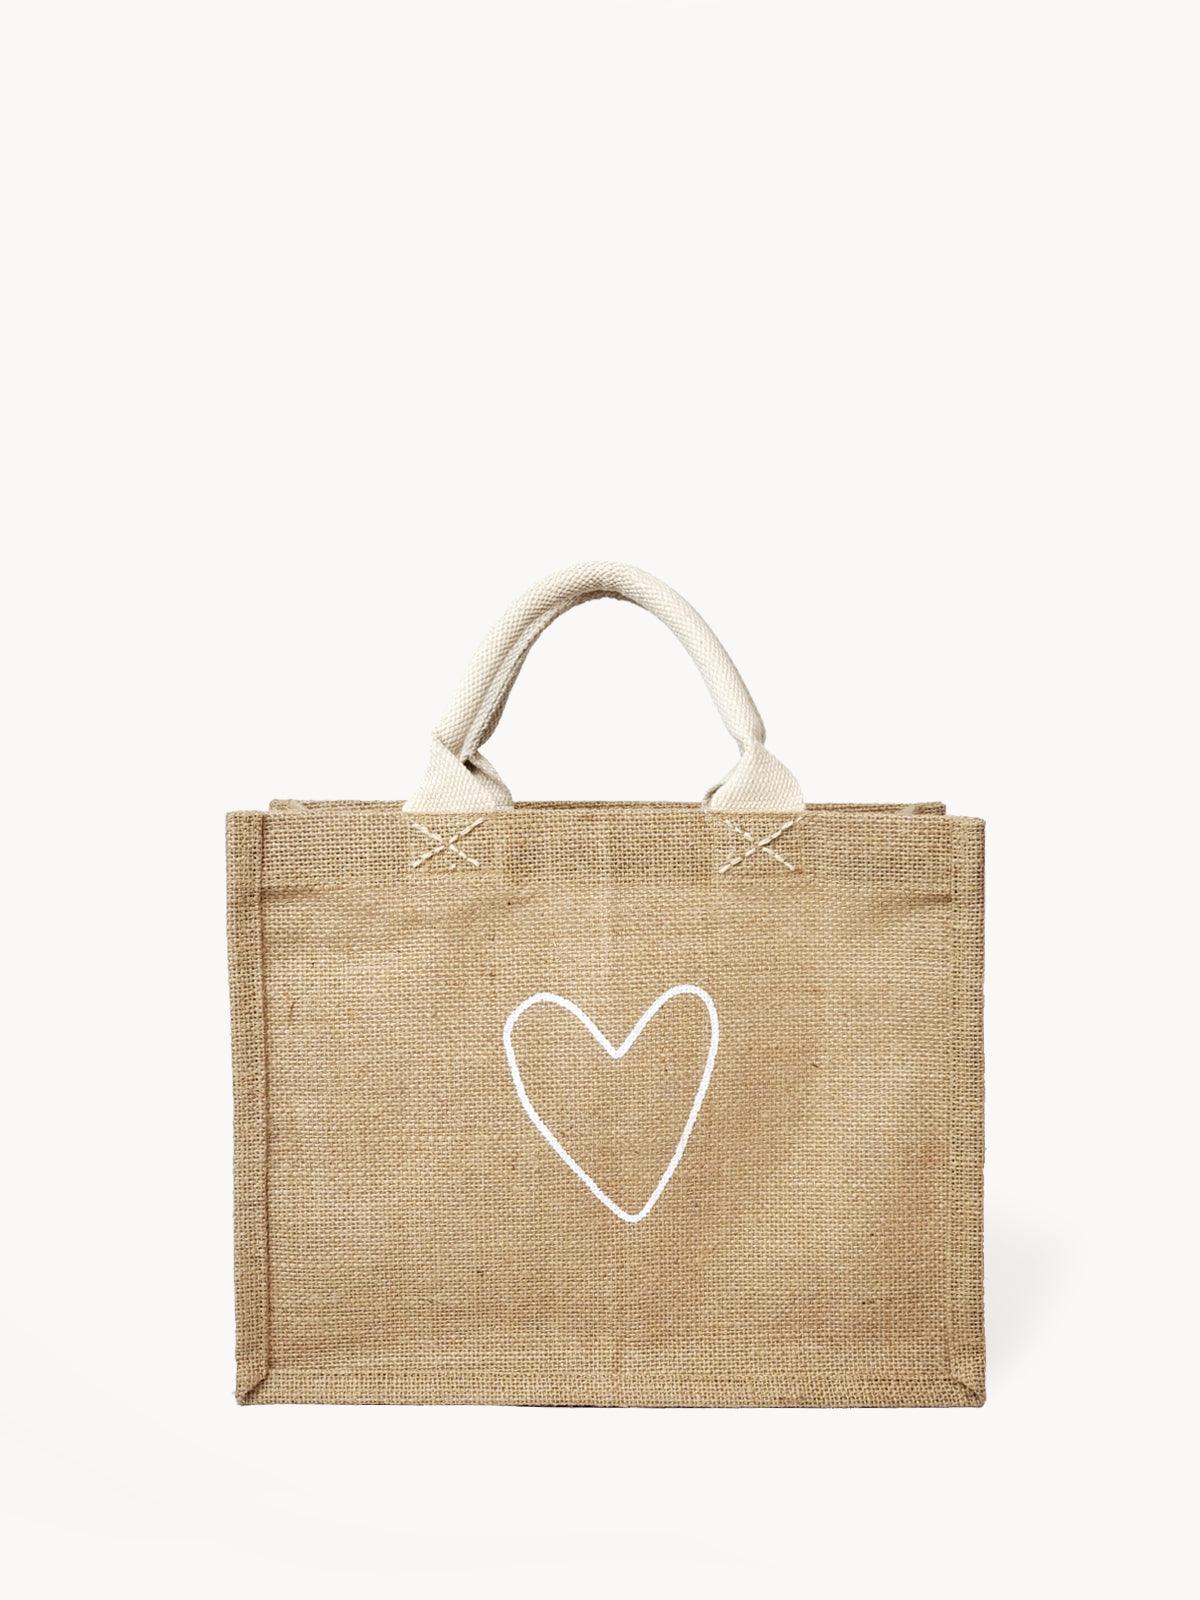 Love Gift Bag - Plant Paradise Boutique